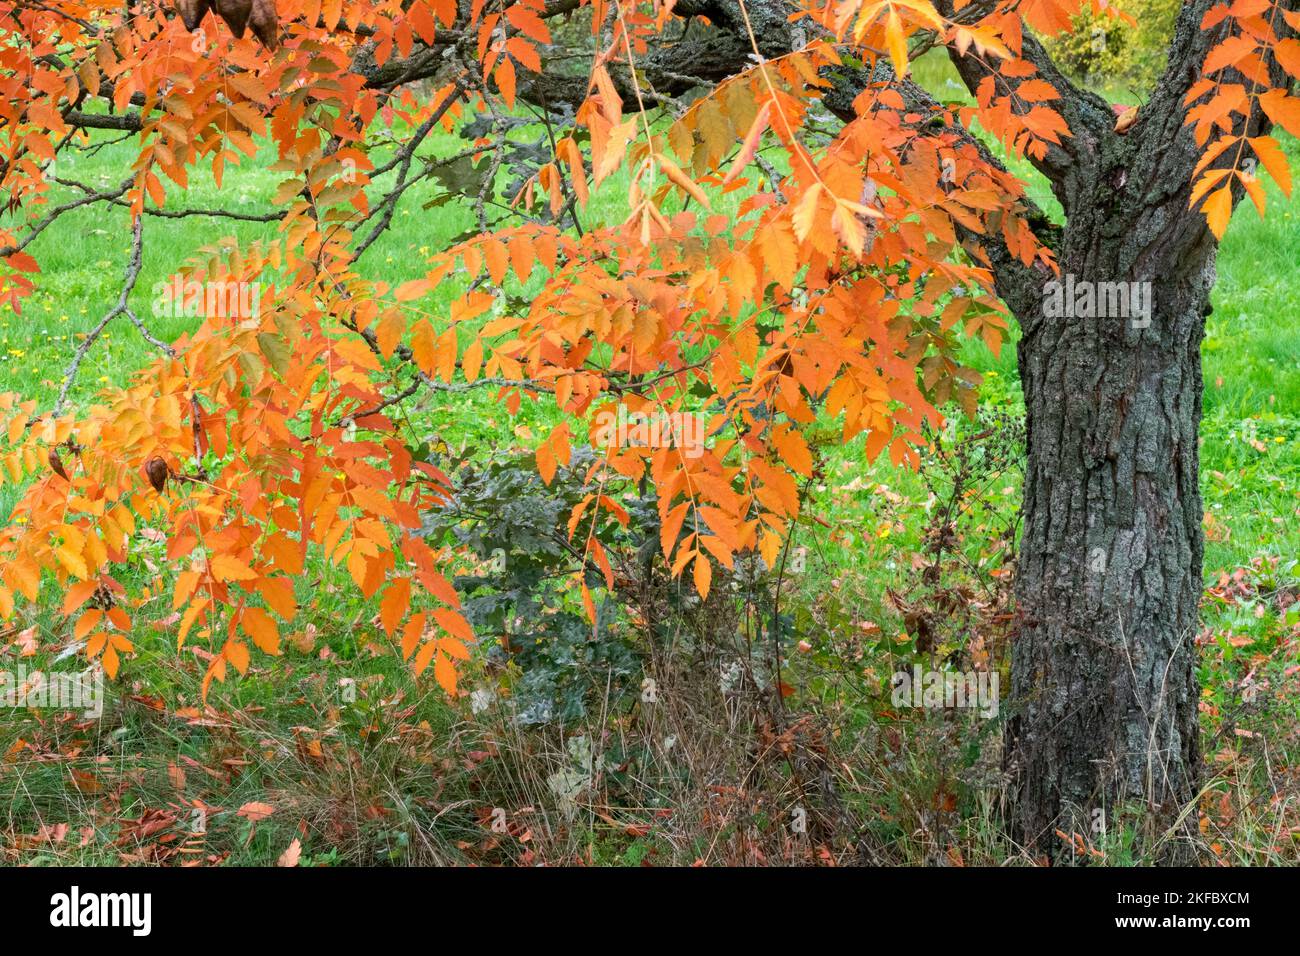 Koelreuteria paniculata, Golden Rain Tree, Autumn, Tree, Varnish Tree Stock Photo